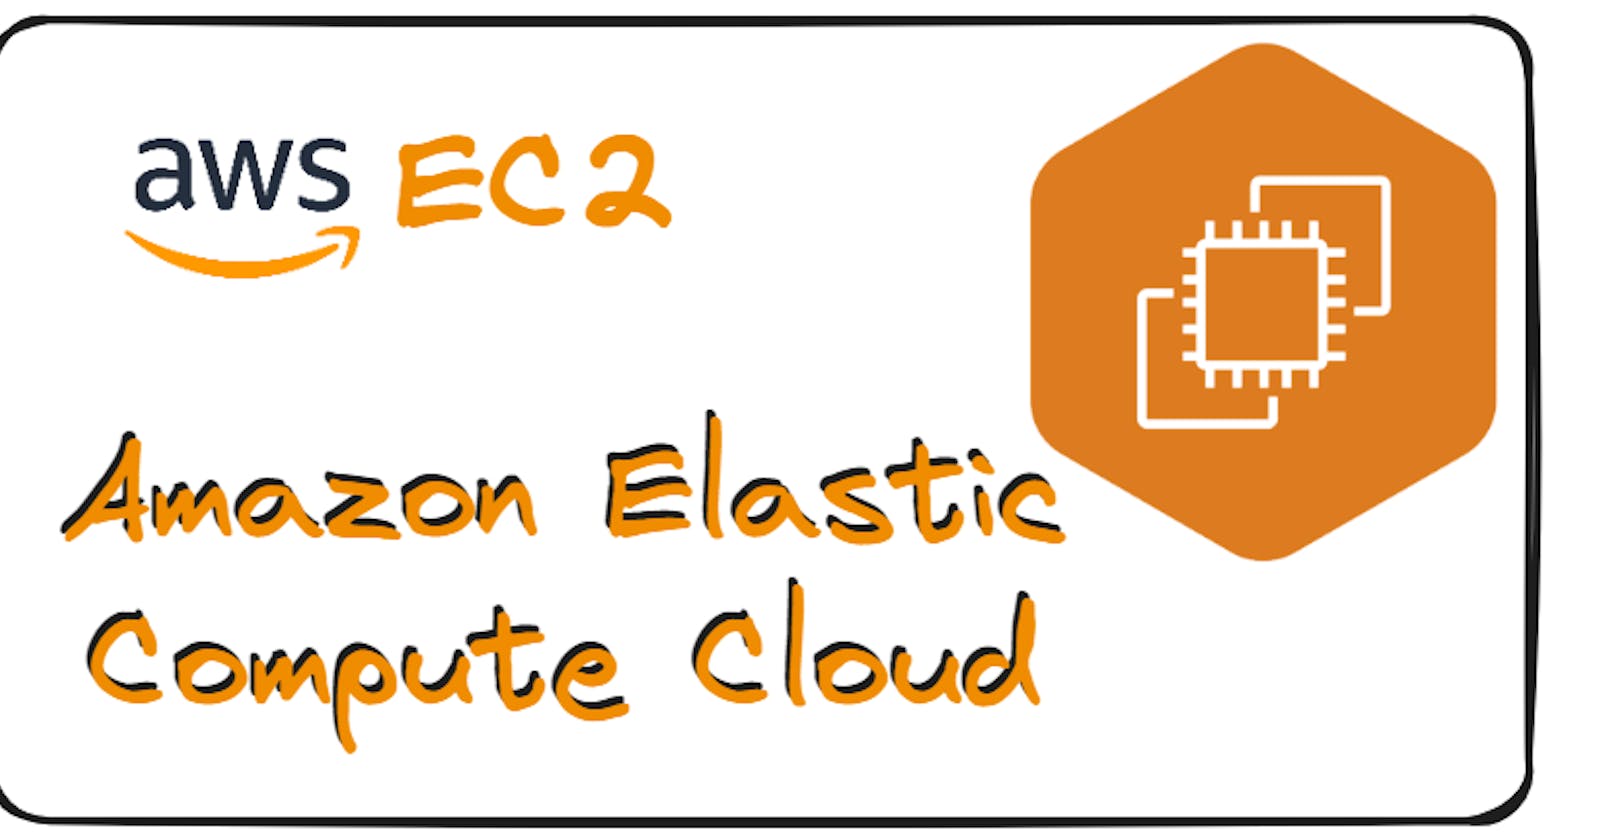 AWS EC2 (Elastic Compute Cloud)